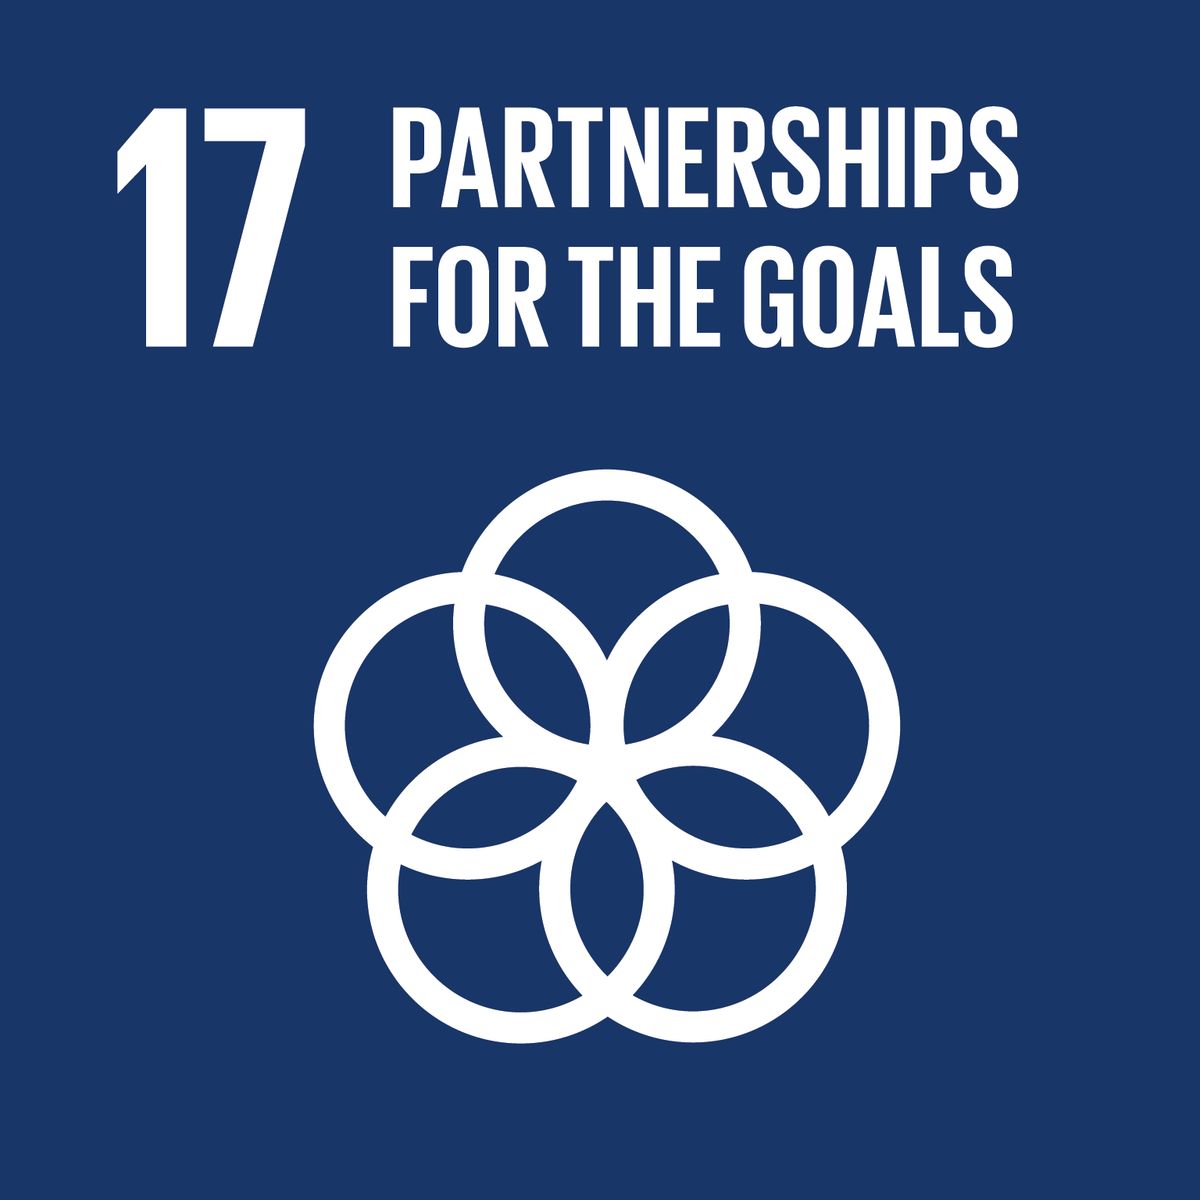 SDG 17 partnership for the goals